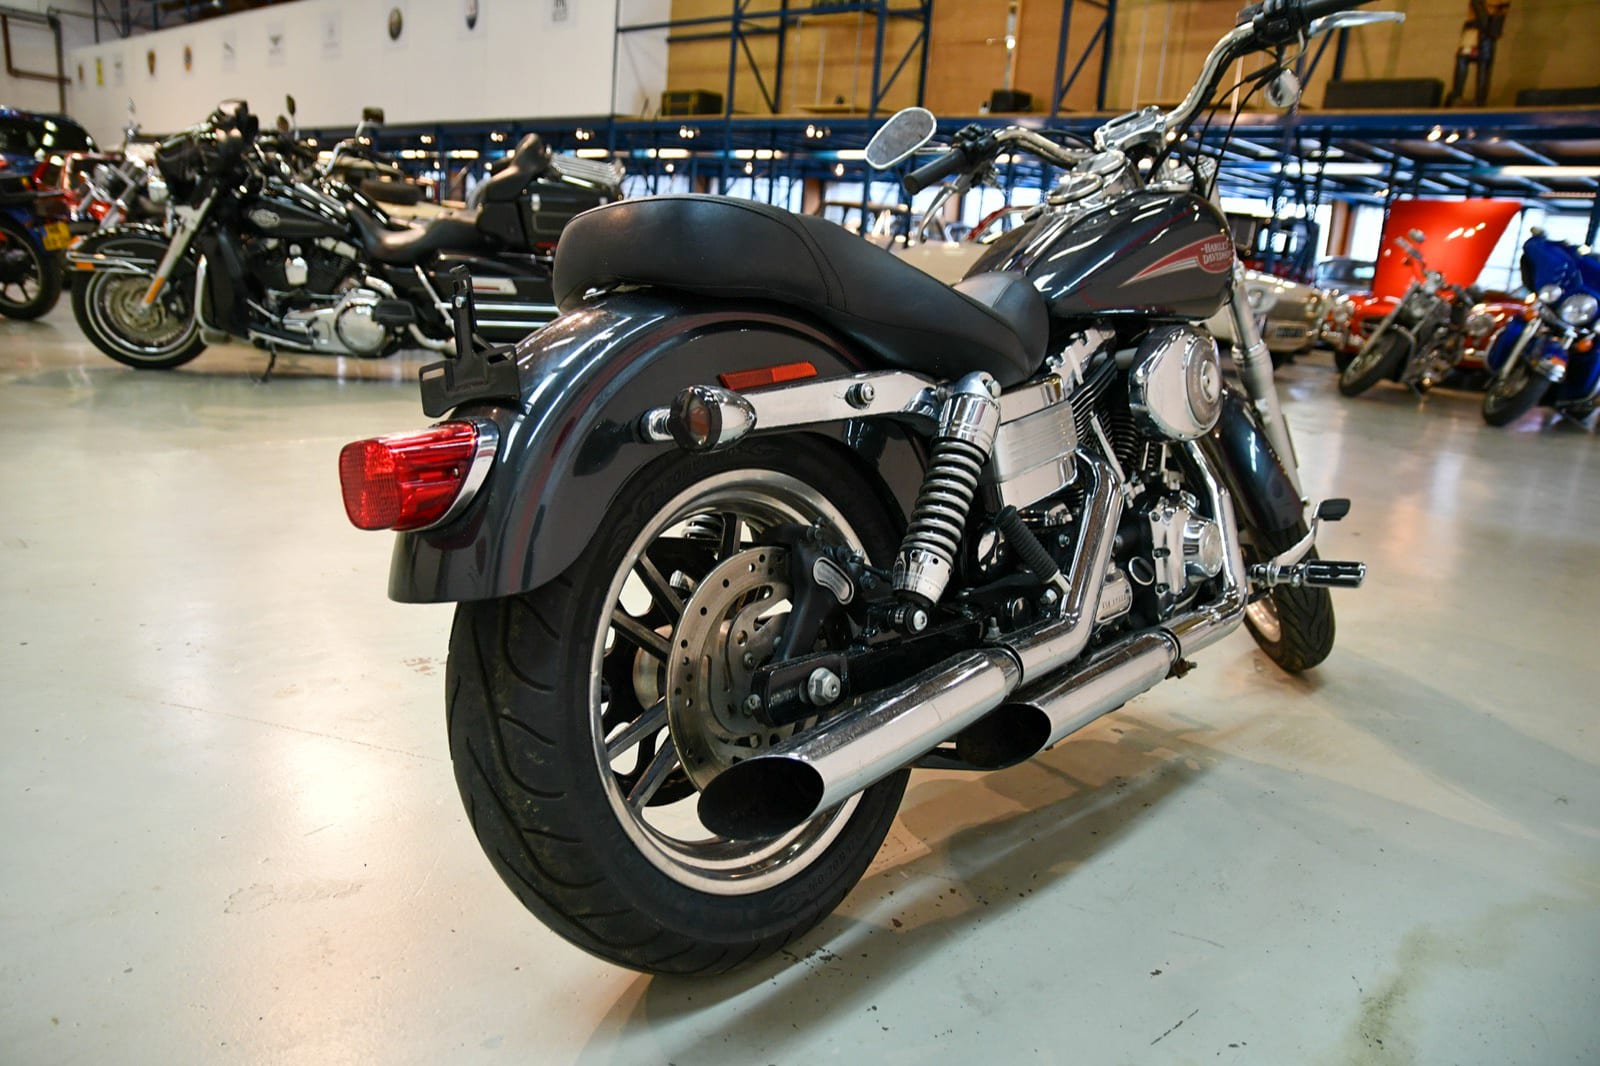 Harley Davidson Dyna Lowrider 2006 15500zł (fxdli)